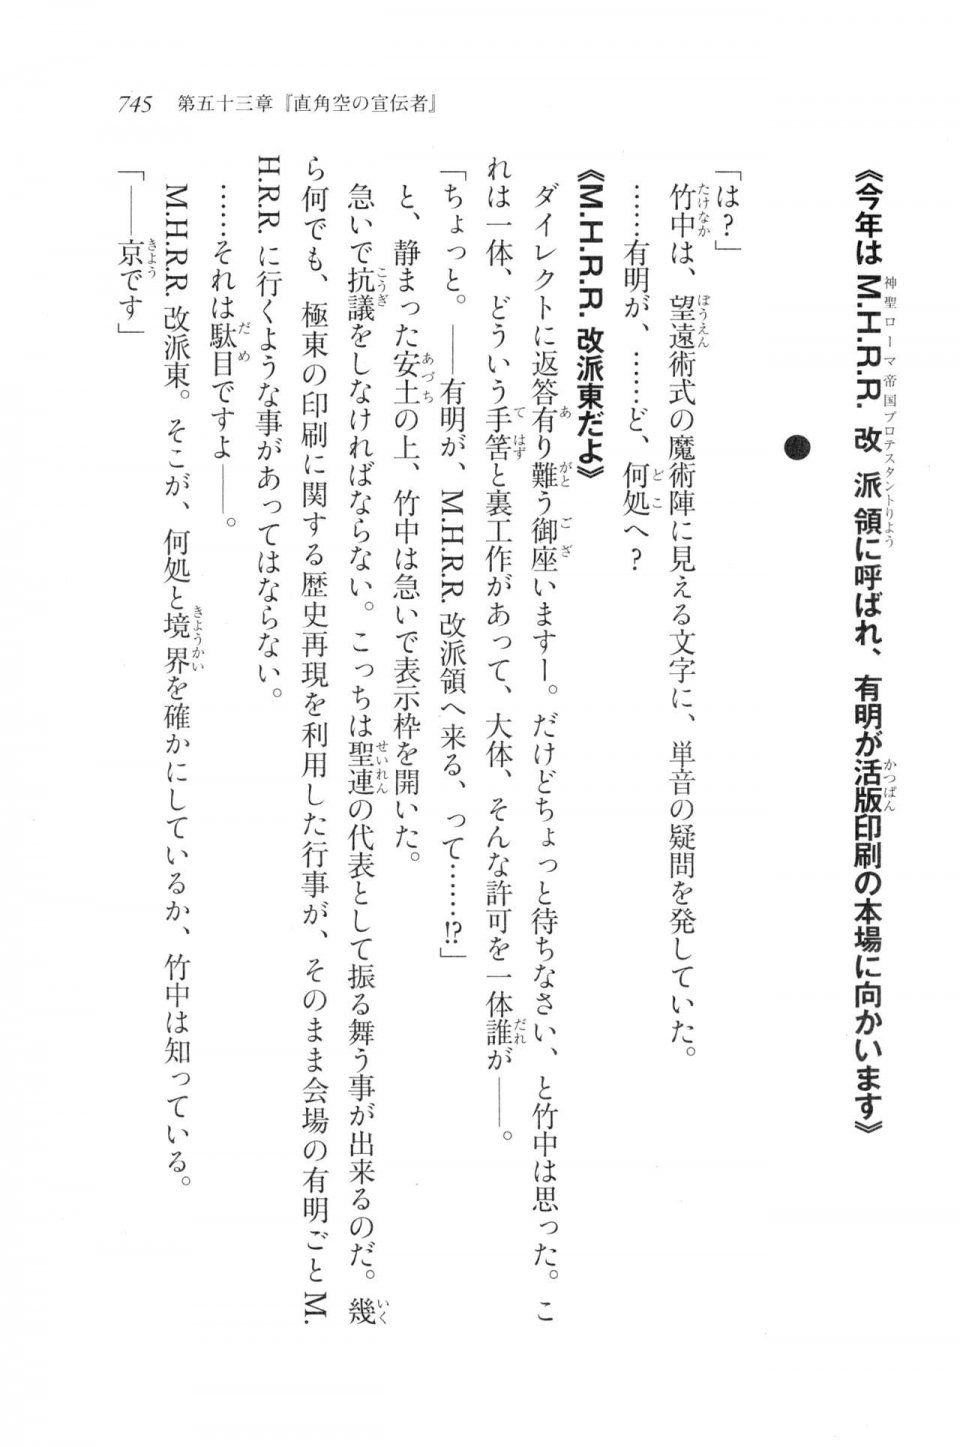 Kyoukai Senjou no Horizon LN Vol 20(8B) - Photo #745